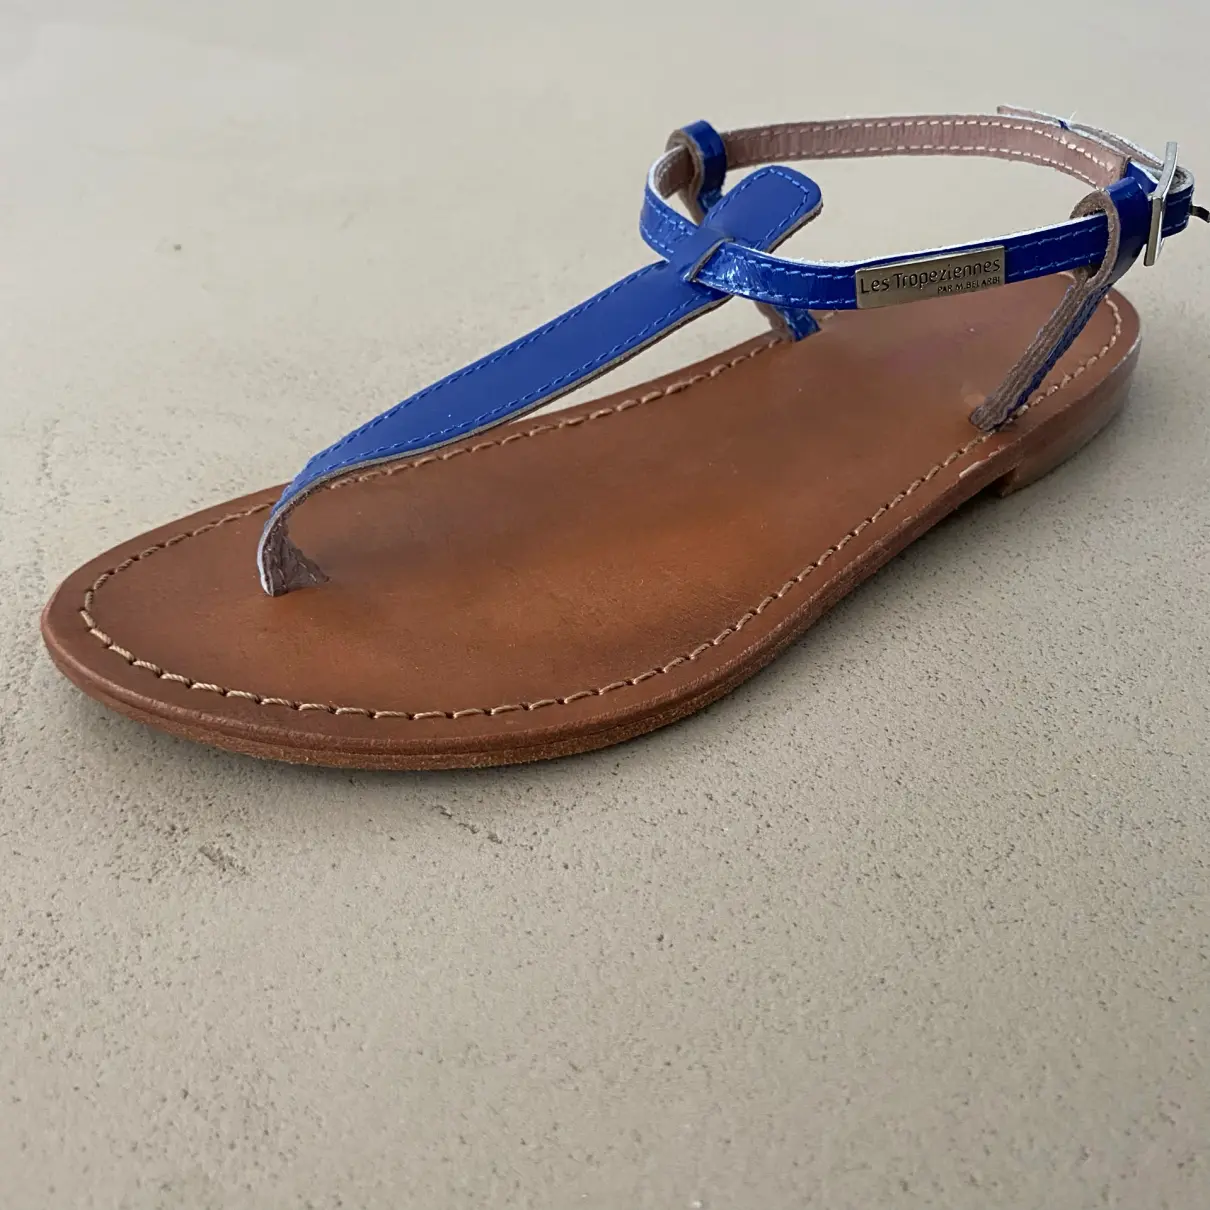 Buy LES TROPEZIENNES Leather sandal online